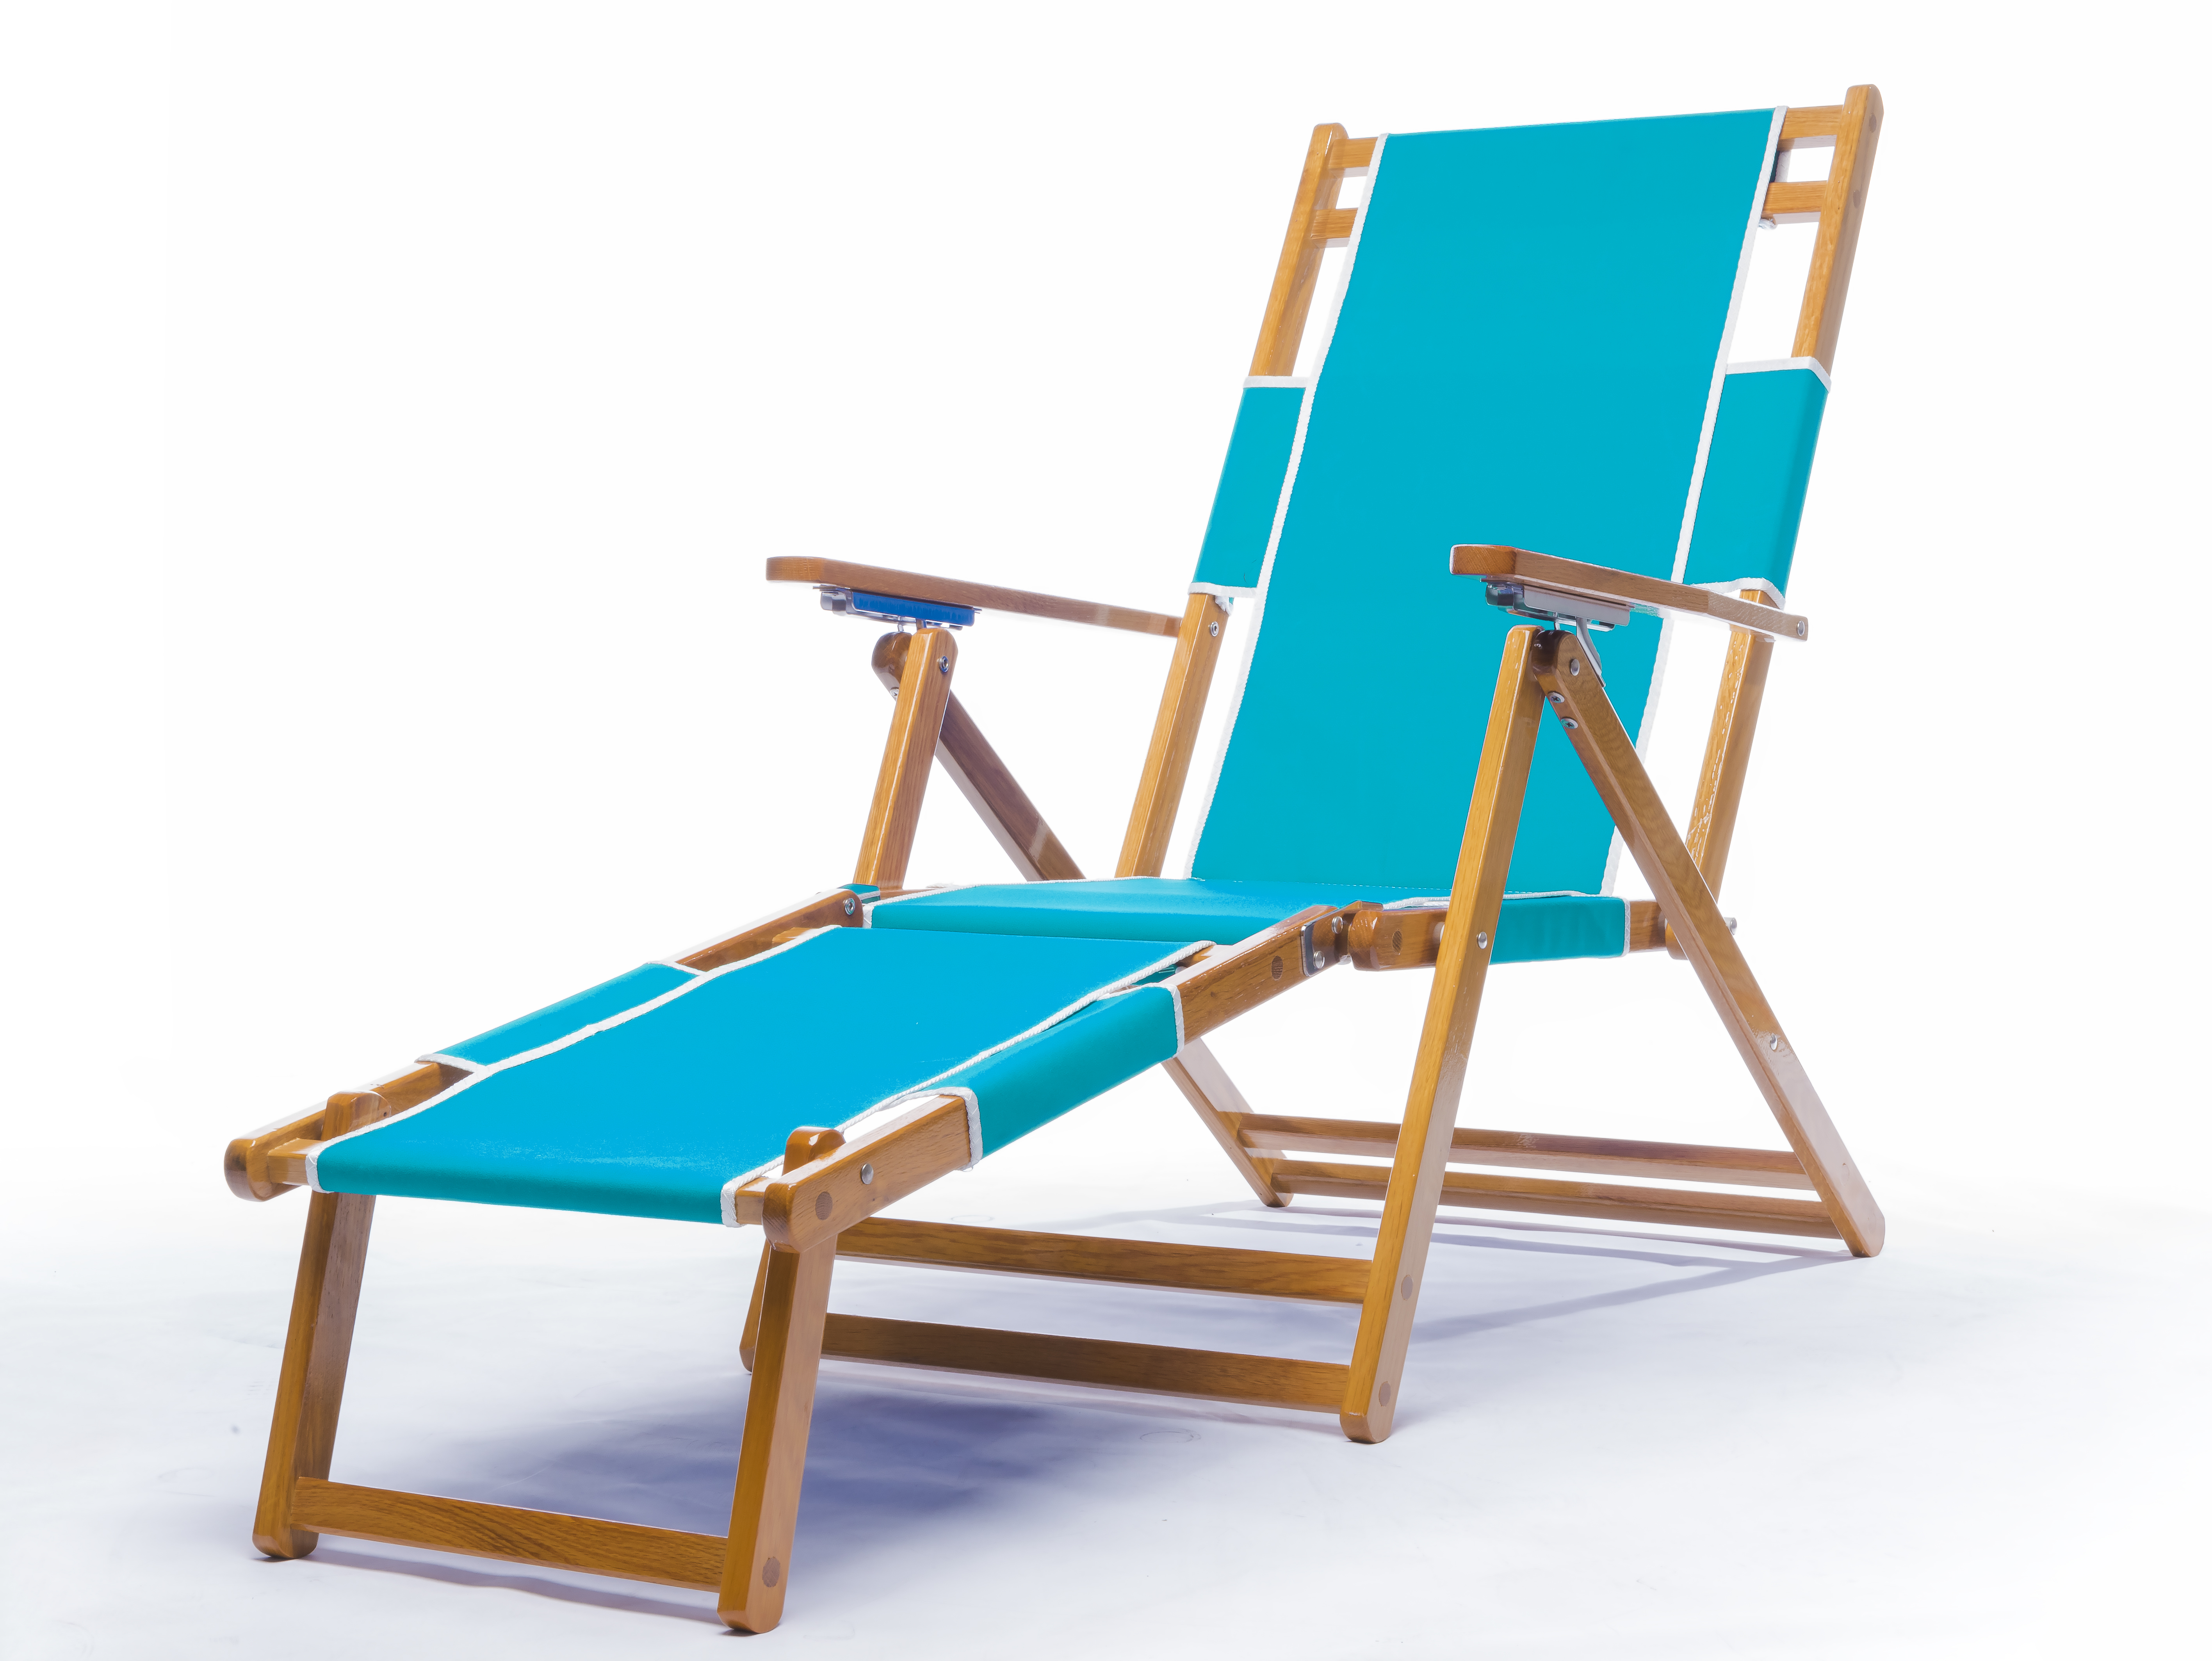 Beach Chair Turquoise
$189.00
